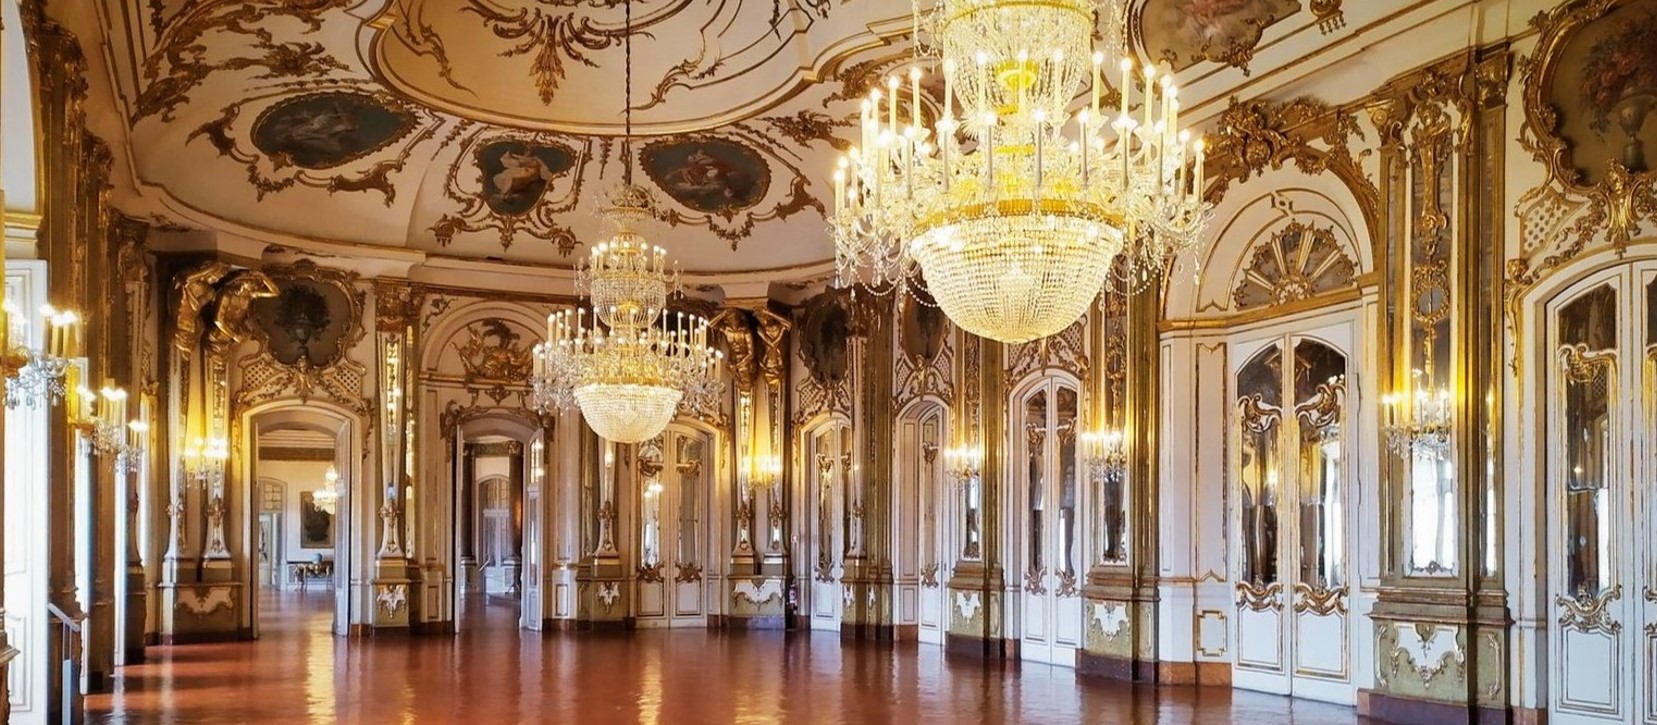 В интерьере используются роскошные люстры и золотые декоративные детали для украшения стен